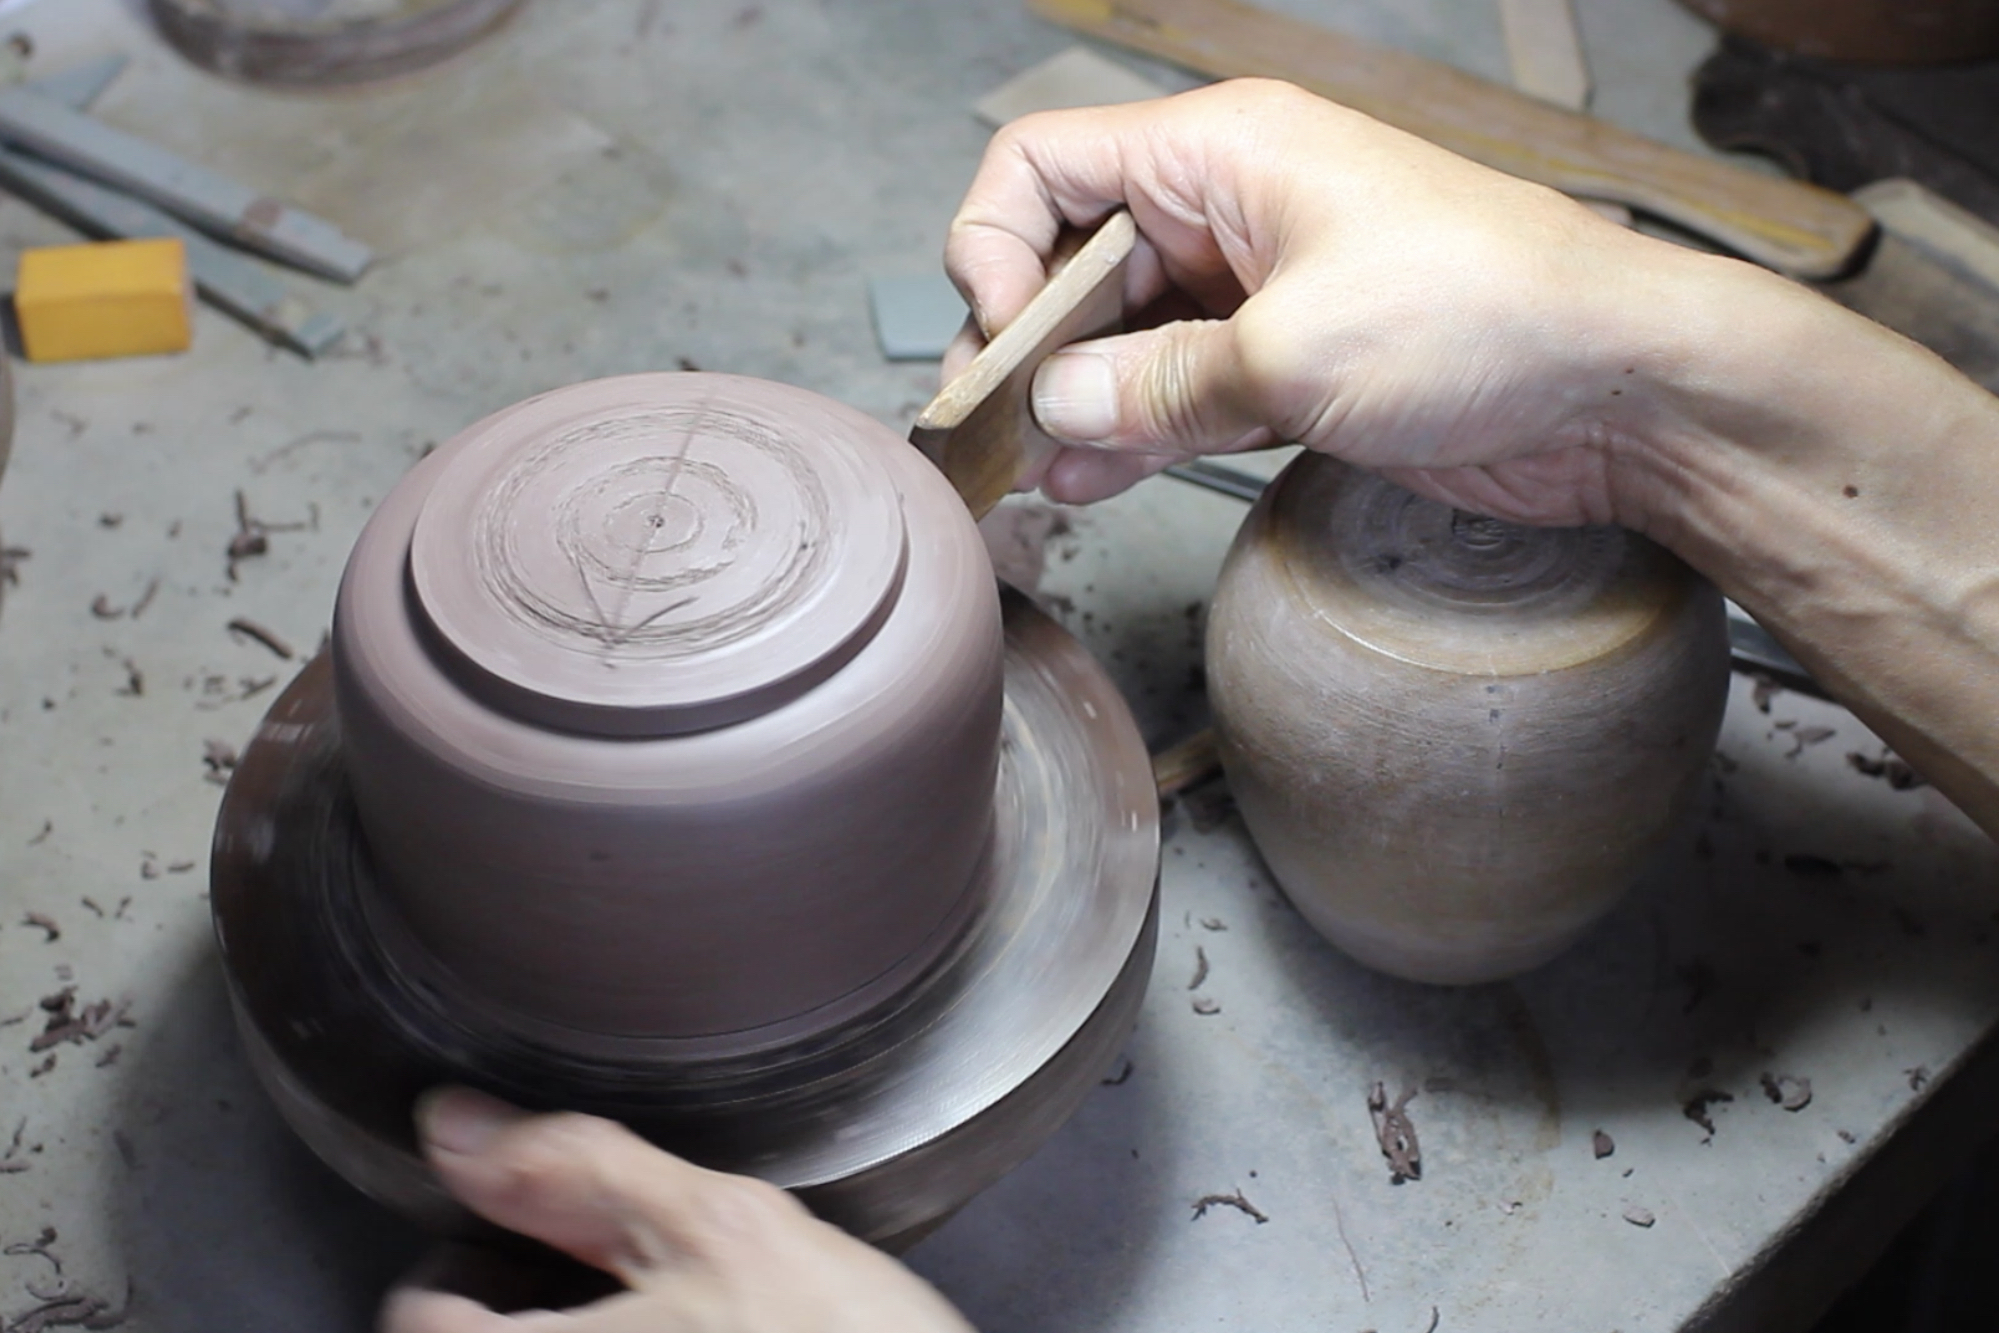 充分激发原矿砂料性能!竹篦子在紫砂壶创作中的使用示范